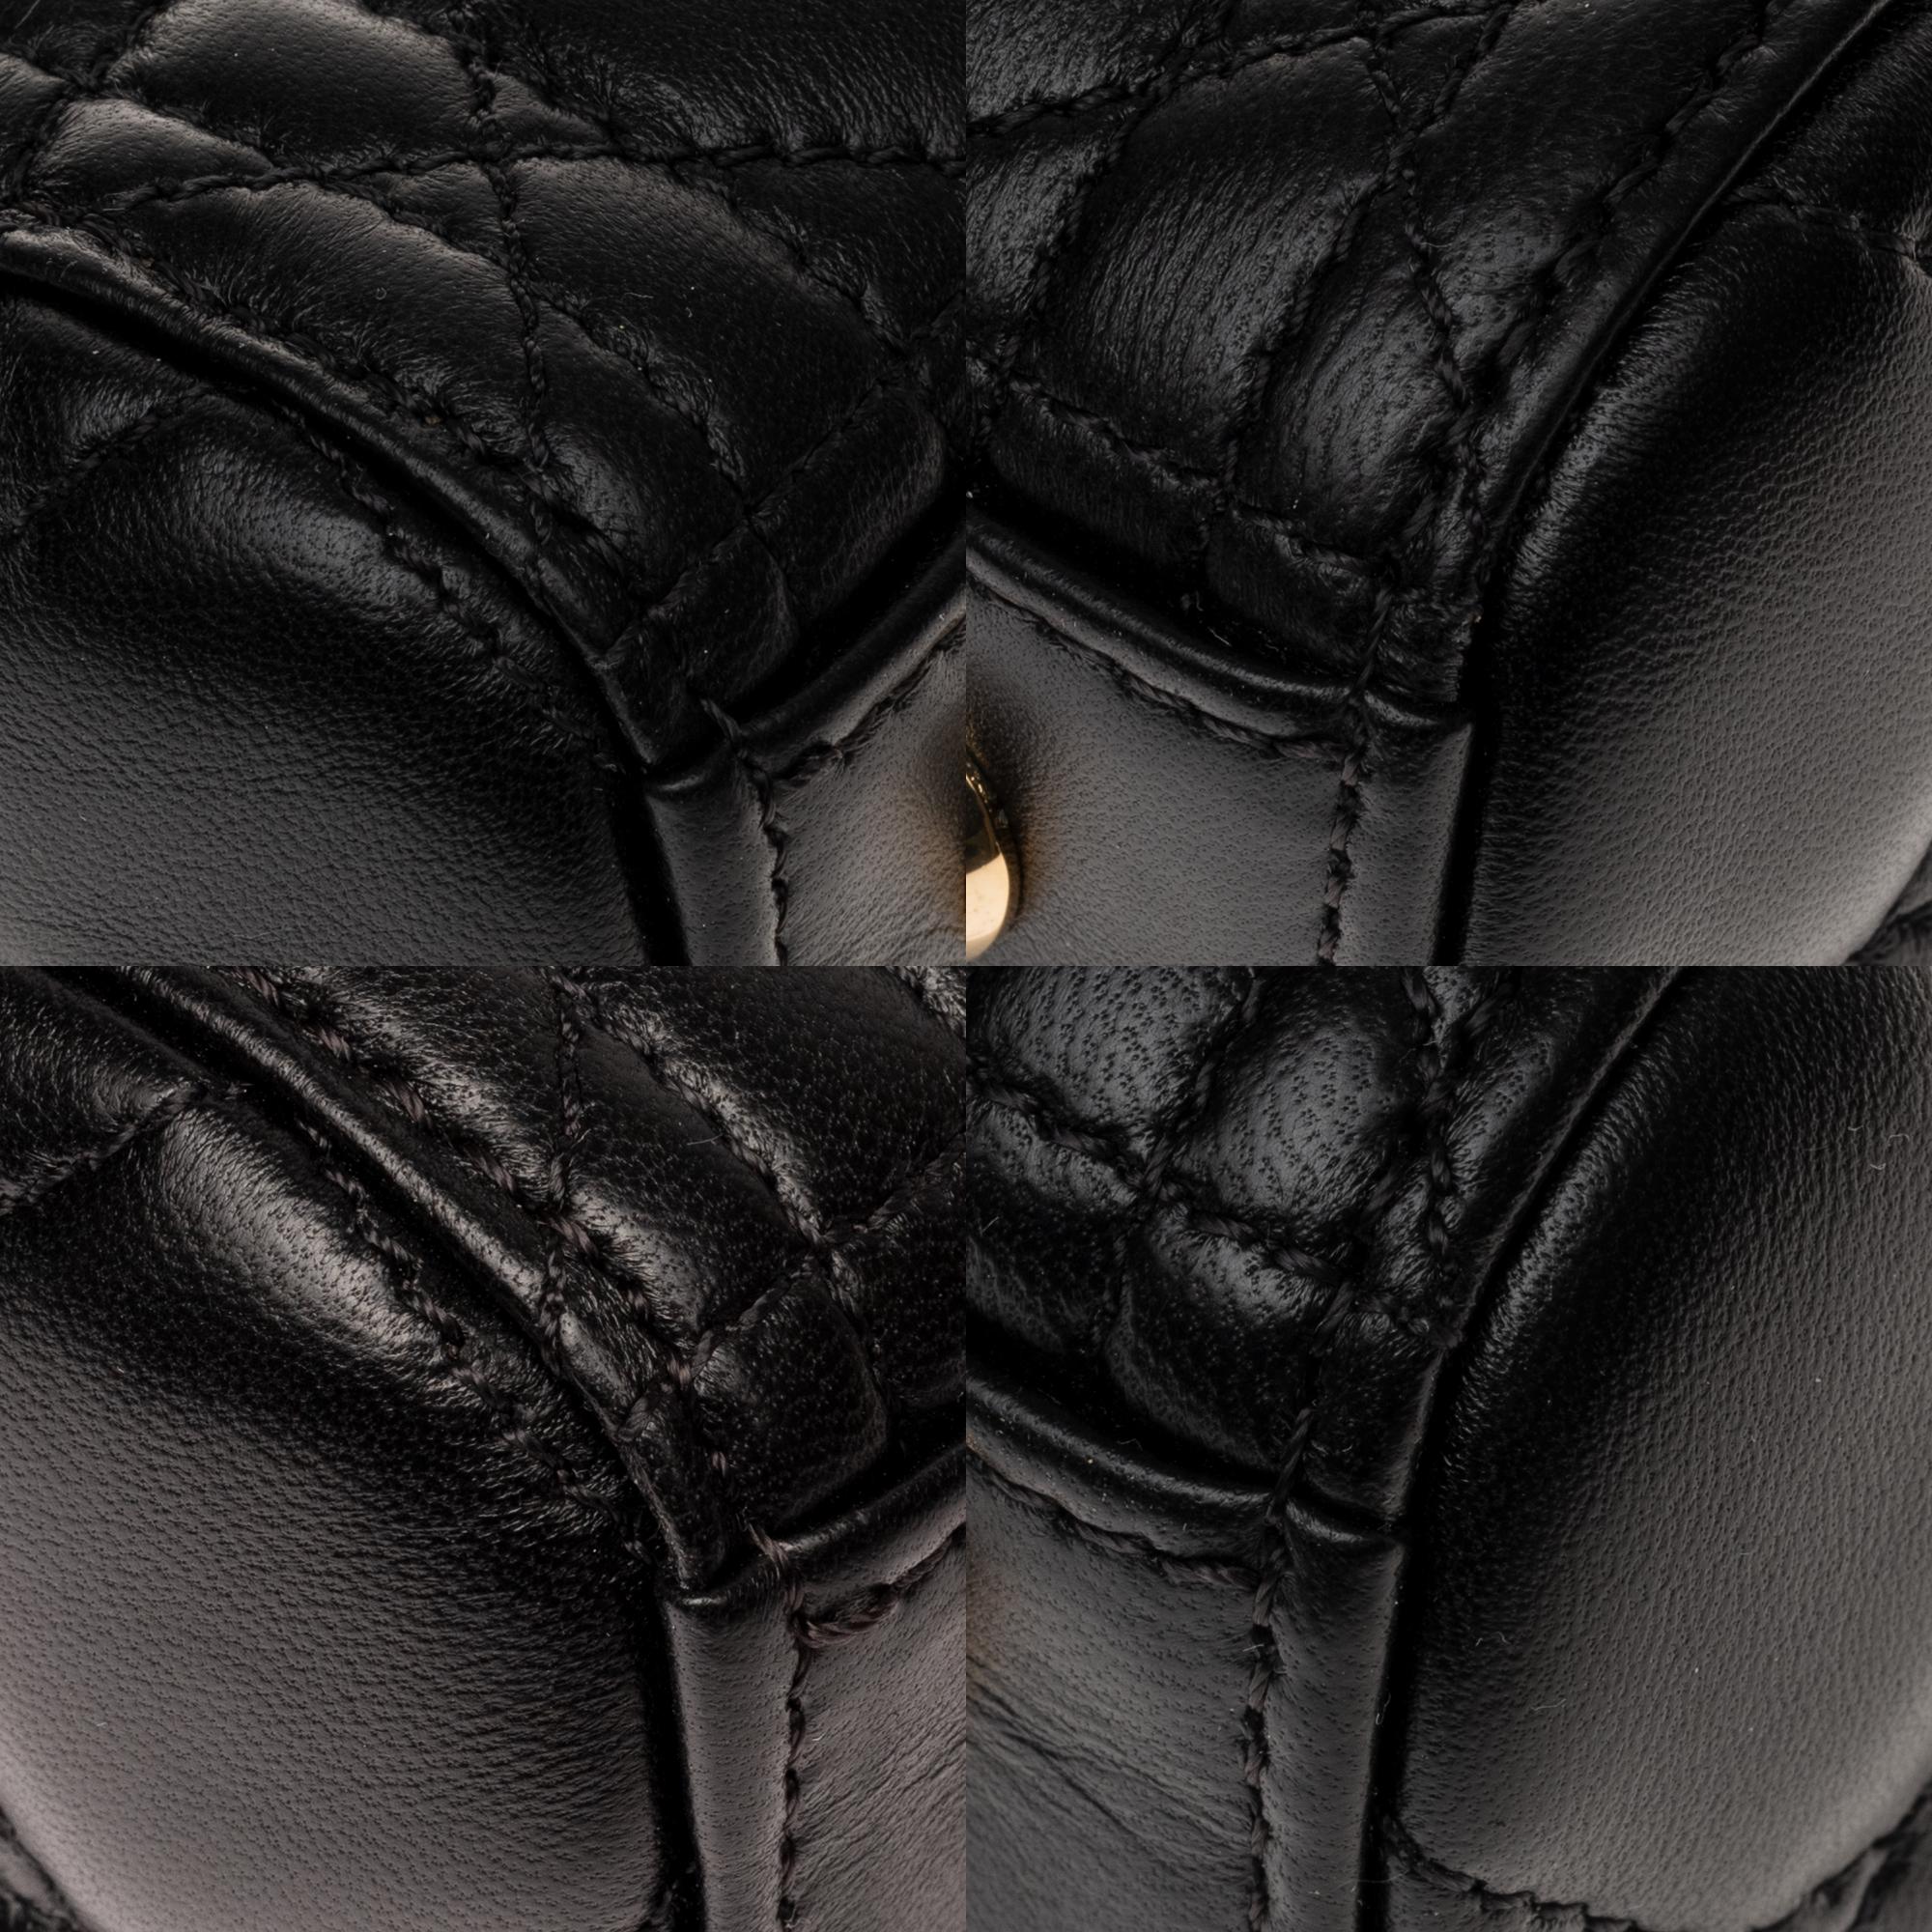  Christian Dior Lady Dior MM (Medium size) handbag in black cannage leather, GHW 2